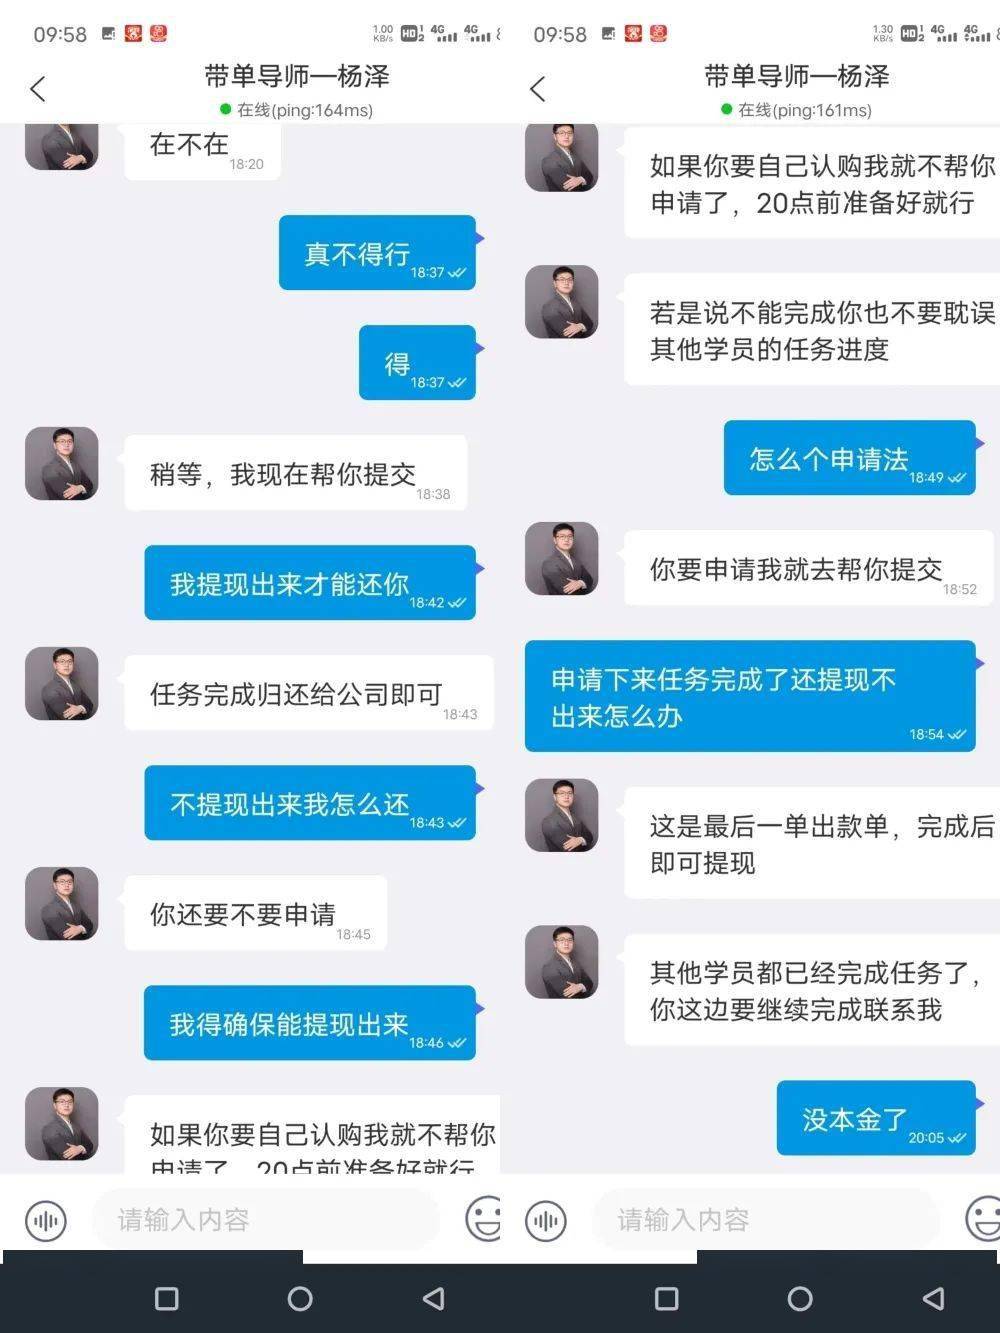 “QQ好友”其实是骗子，滕州郭某被骗4000元，聊天记录全曝光…